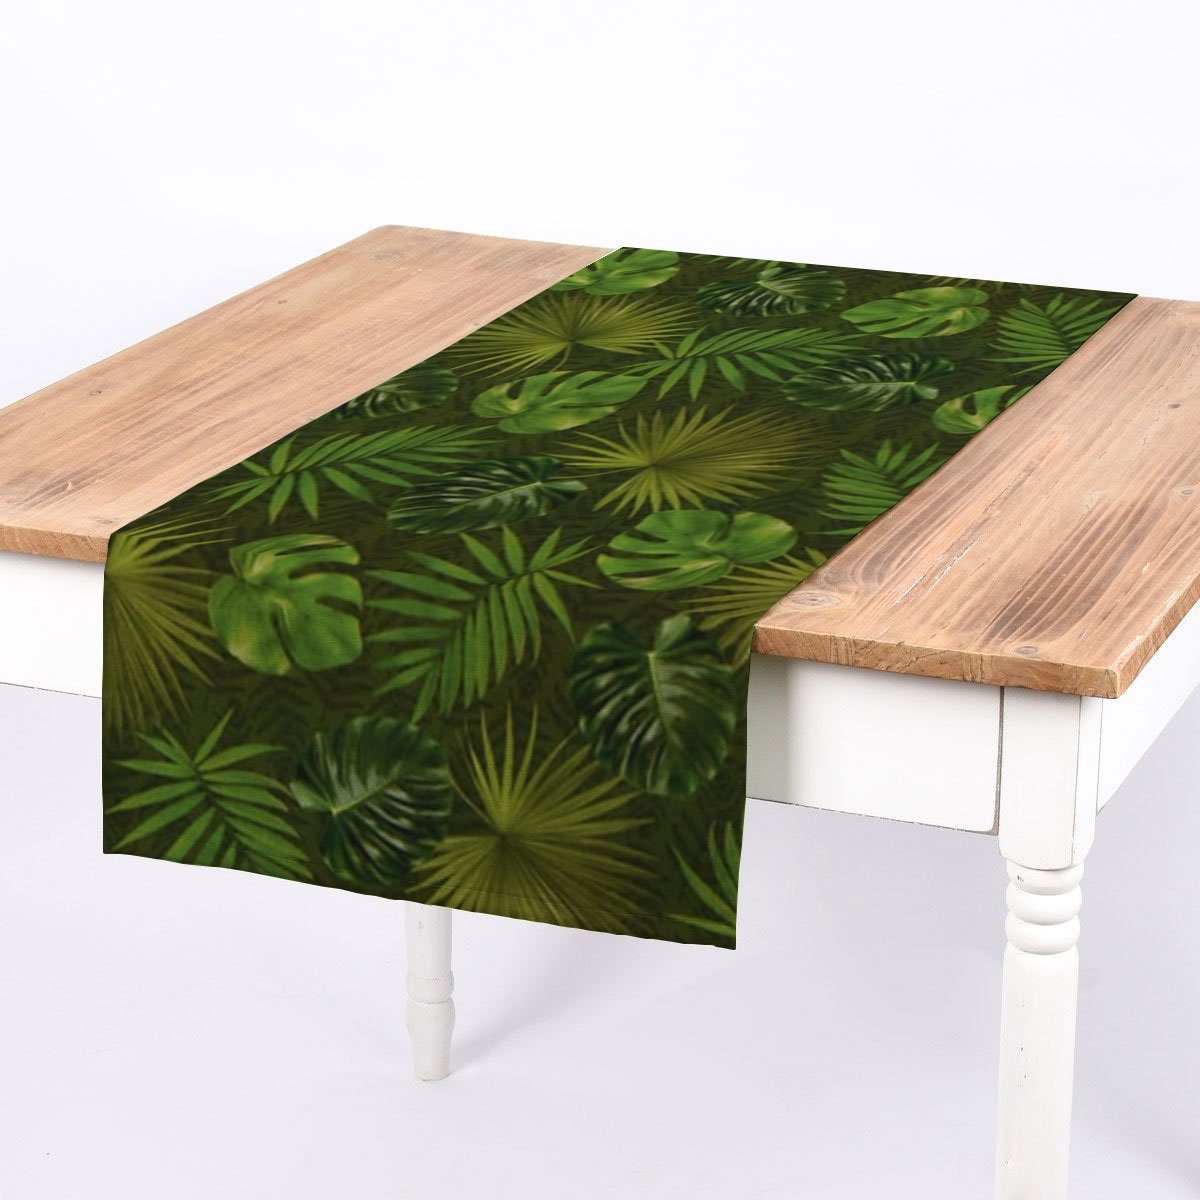 SCHÖNER LEBEN. Tischläufer SCHÖNER LEBEN. Tischläufer Outdoor Palmen Blätter grün 40x160cm, handmade